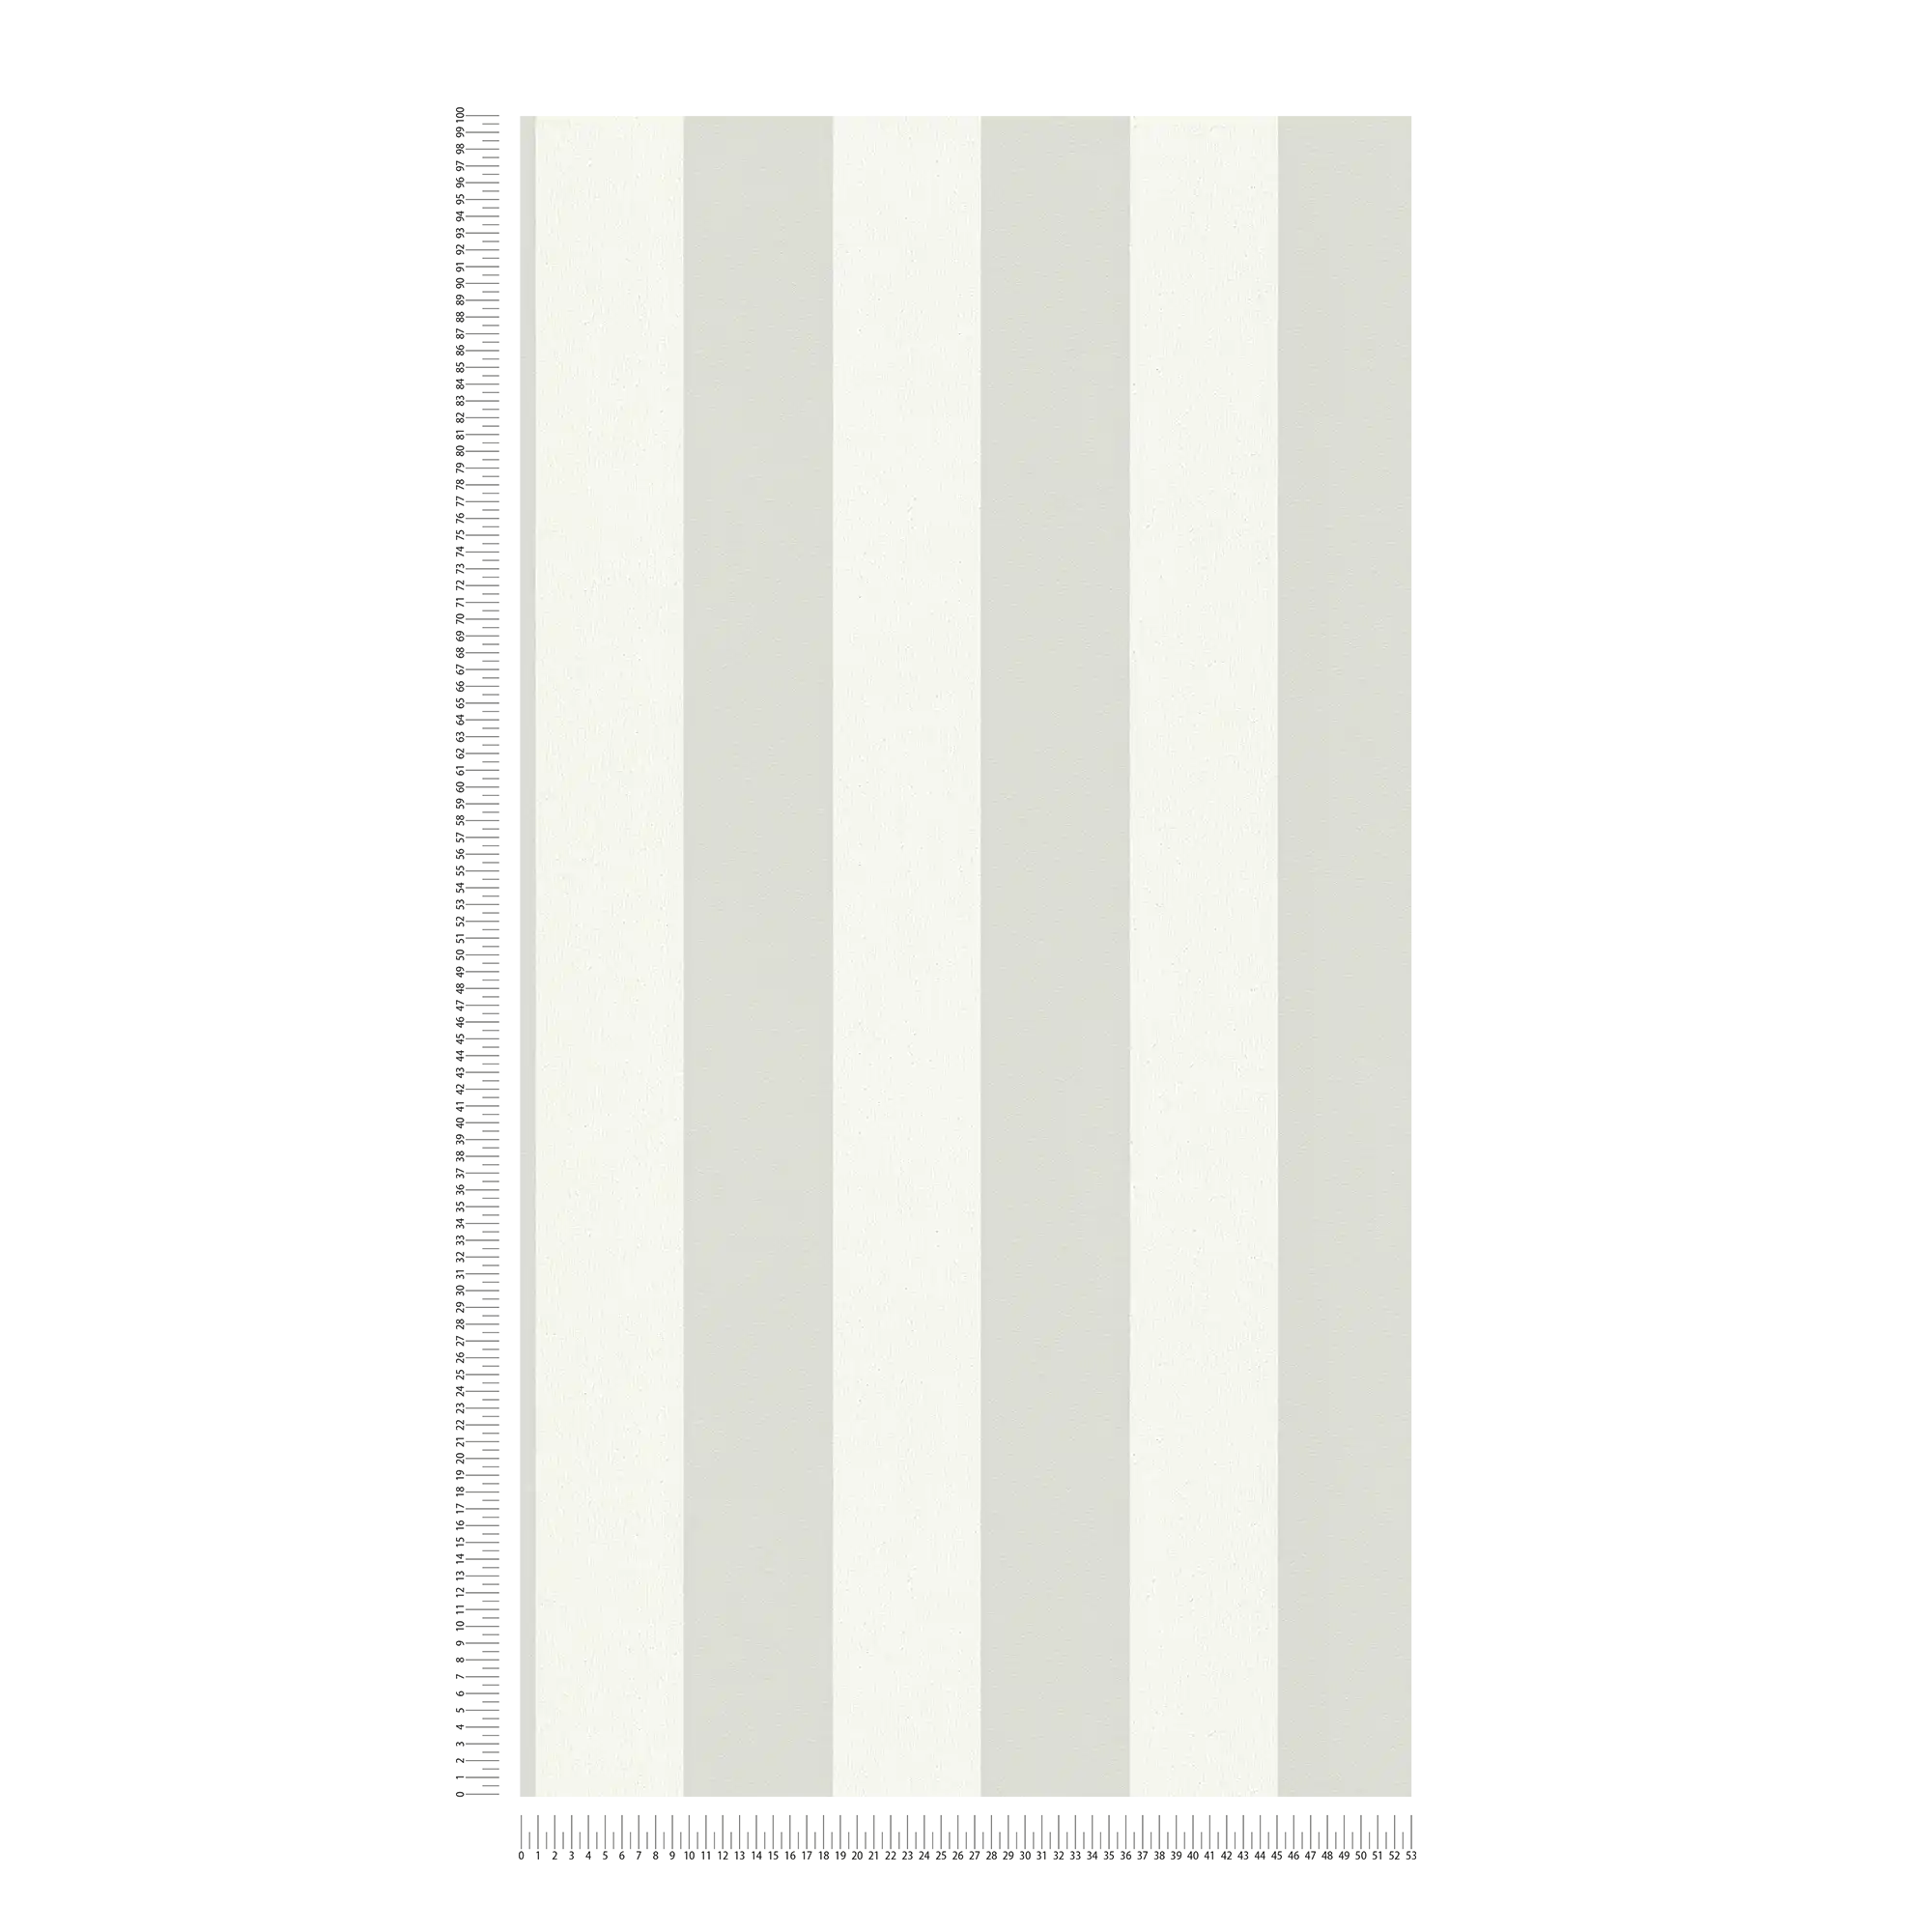             rayures Papier peint à motifs structurés, rayures en bloc gris & blanc
        